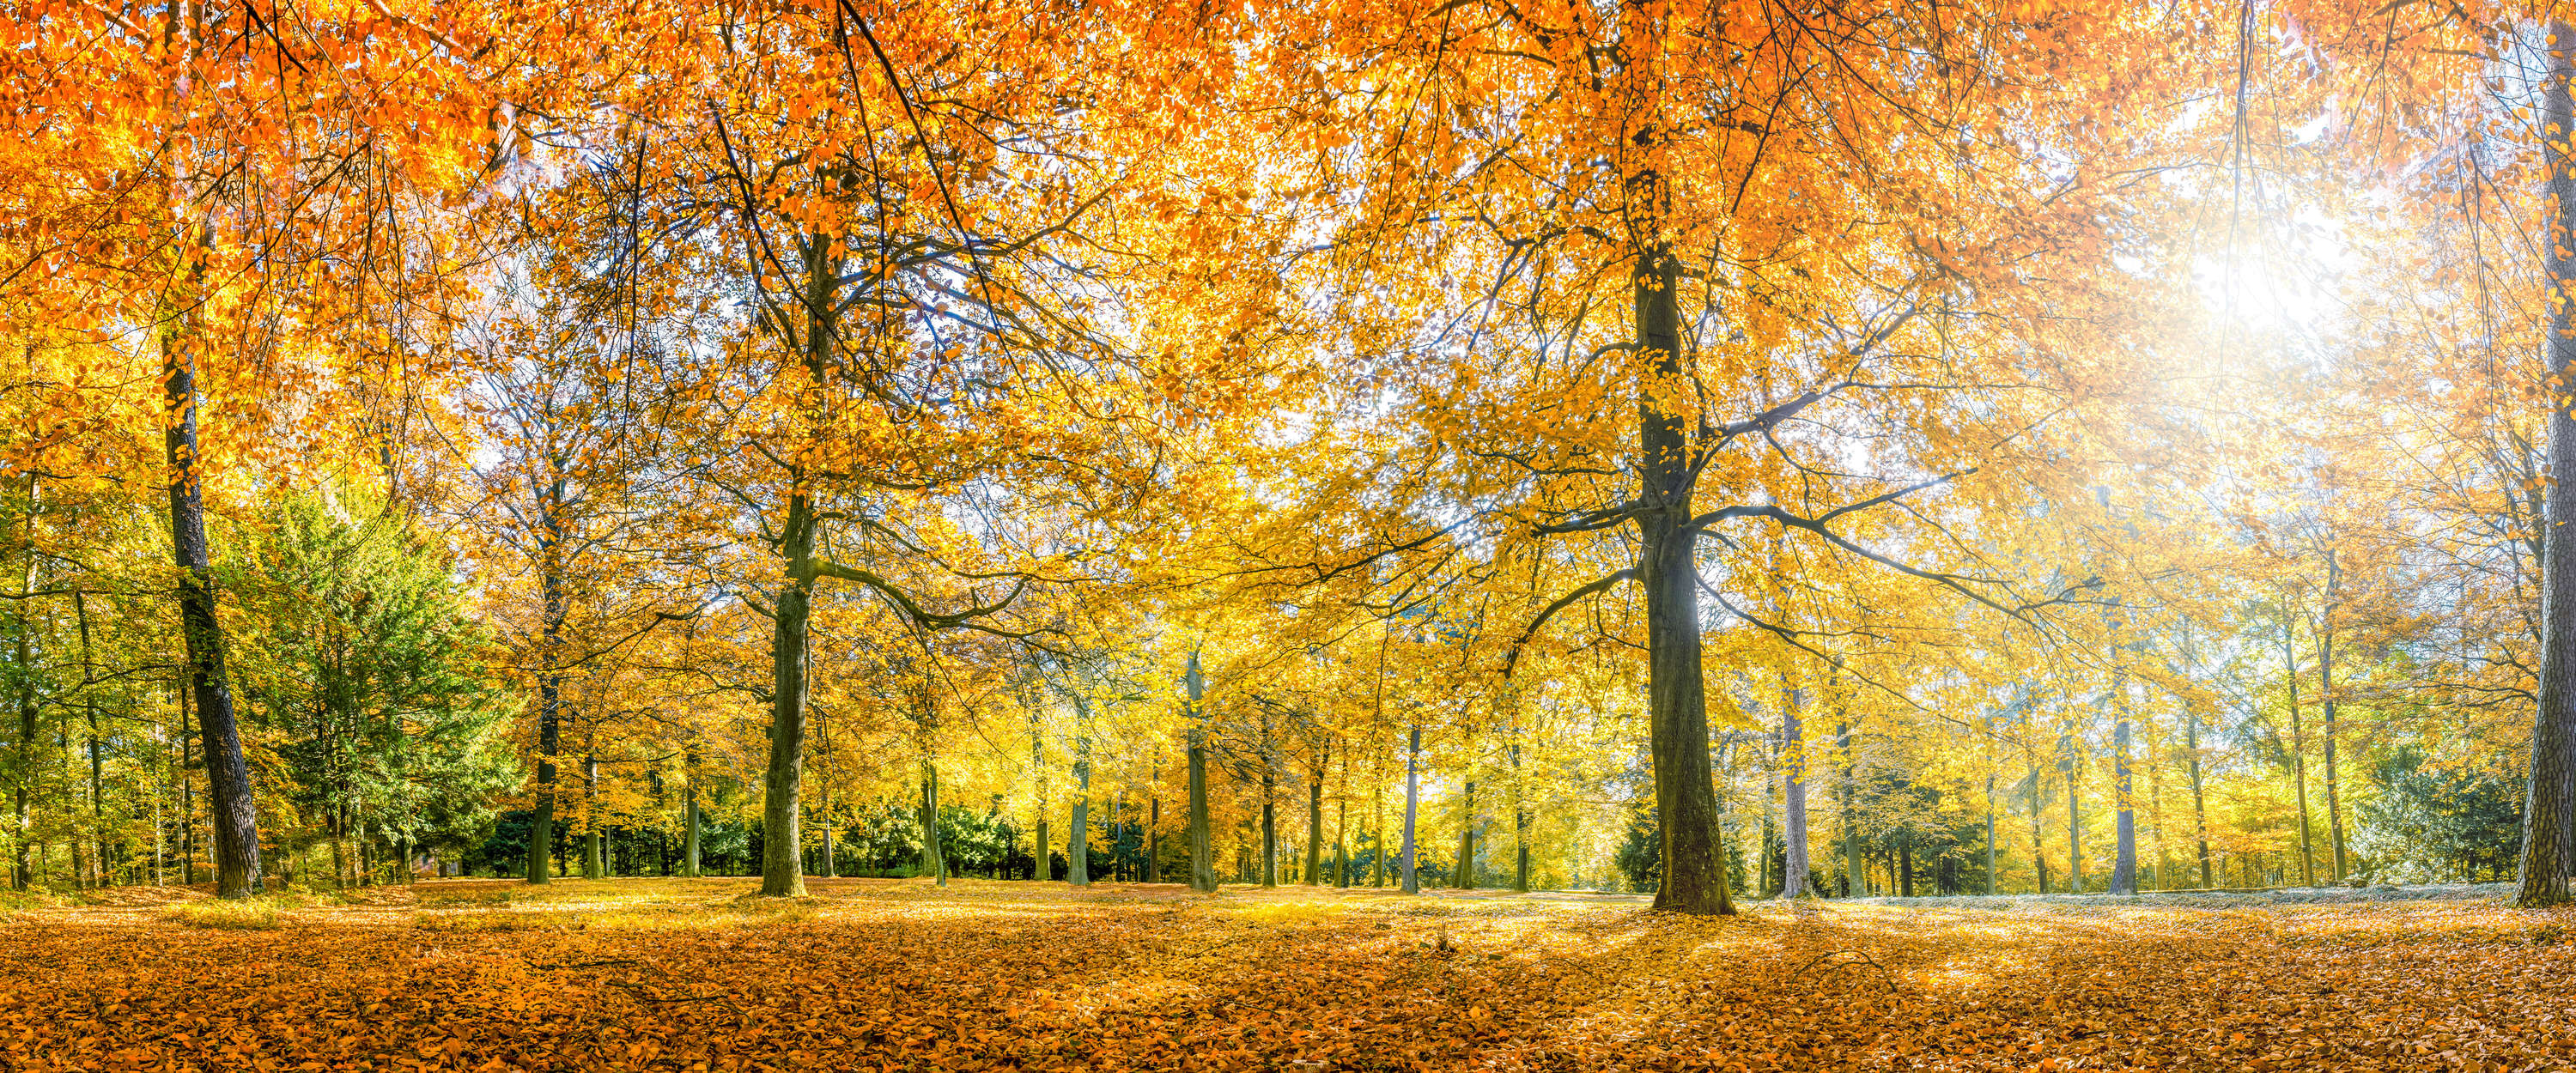             Fototapete Wald im Herbst mit gelben Laubbäumen
        